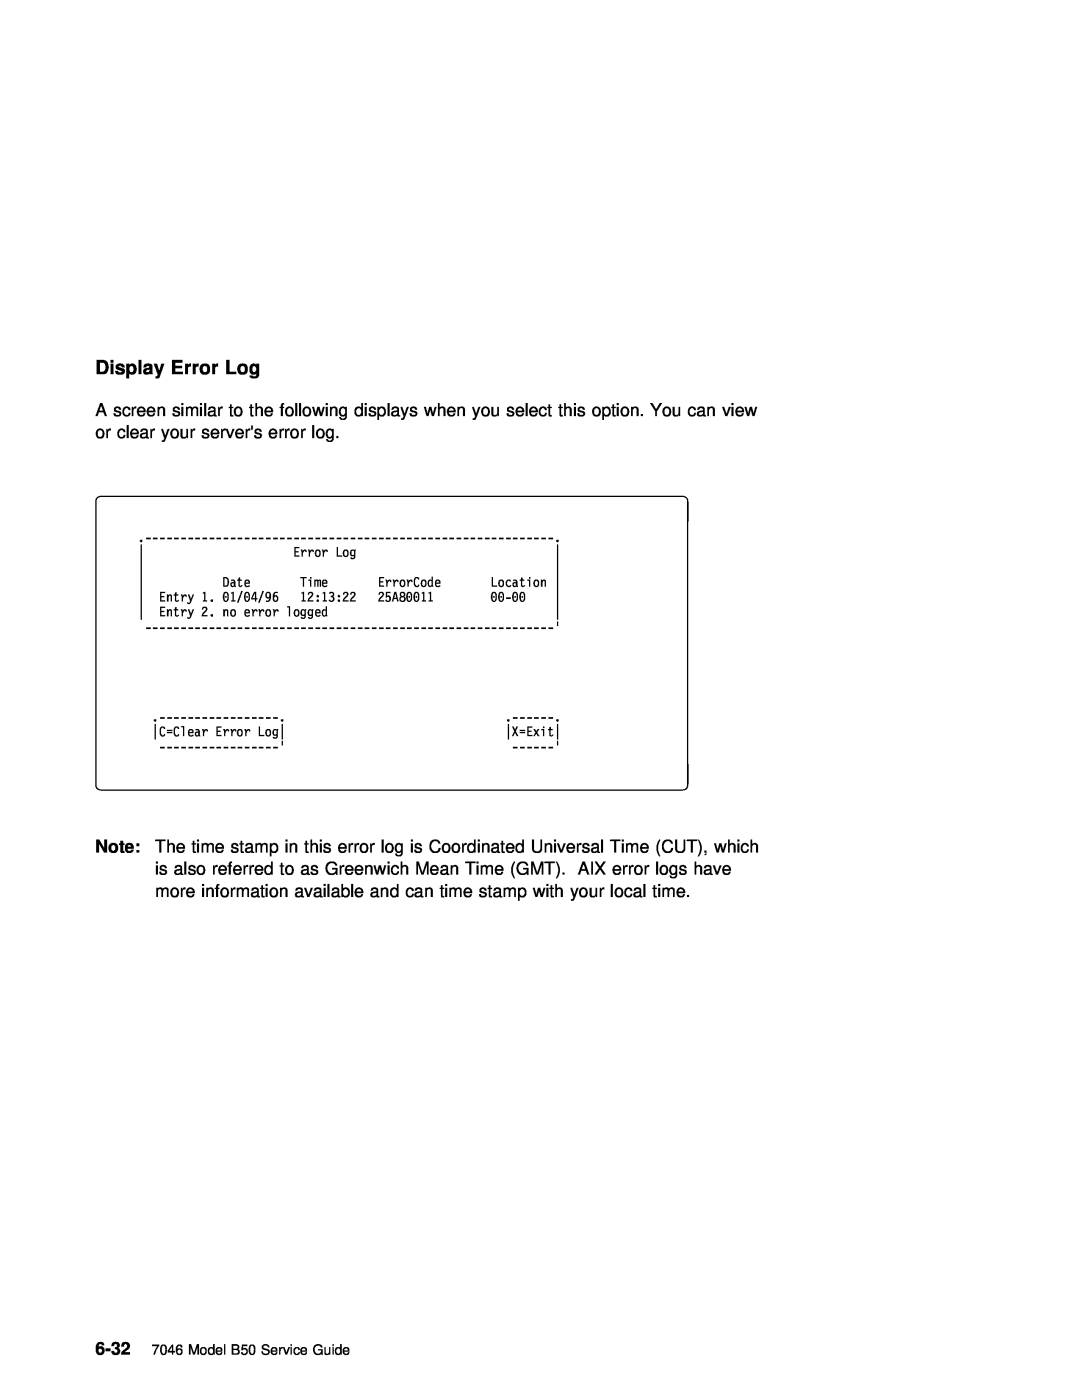 IBM manual Display Error Log, 6-32 7046 Model B50 Service Guide 